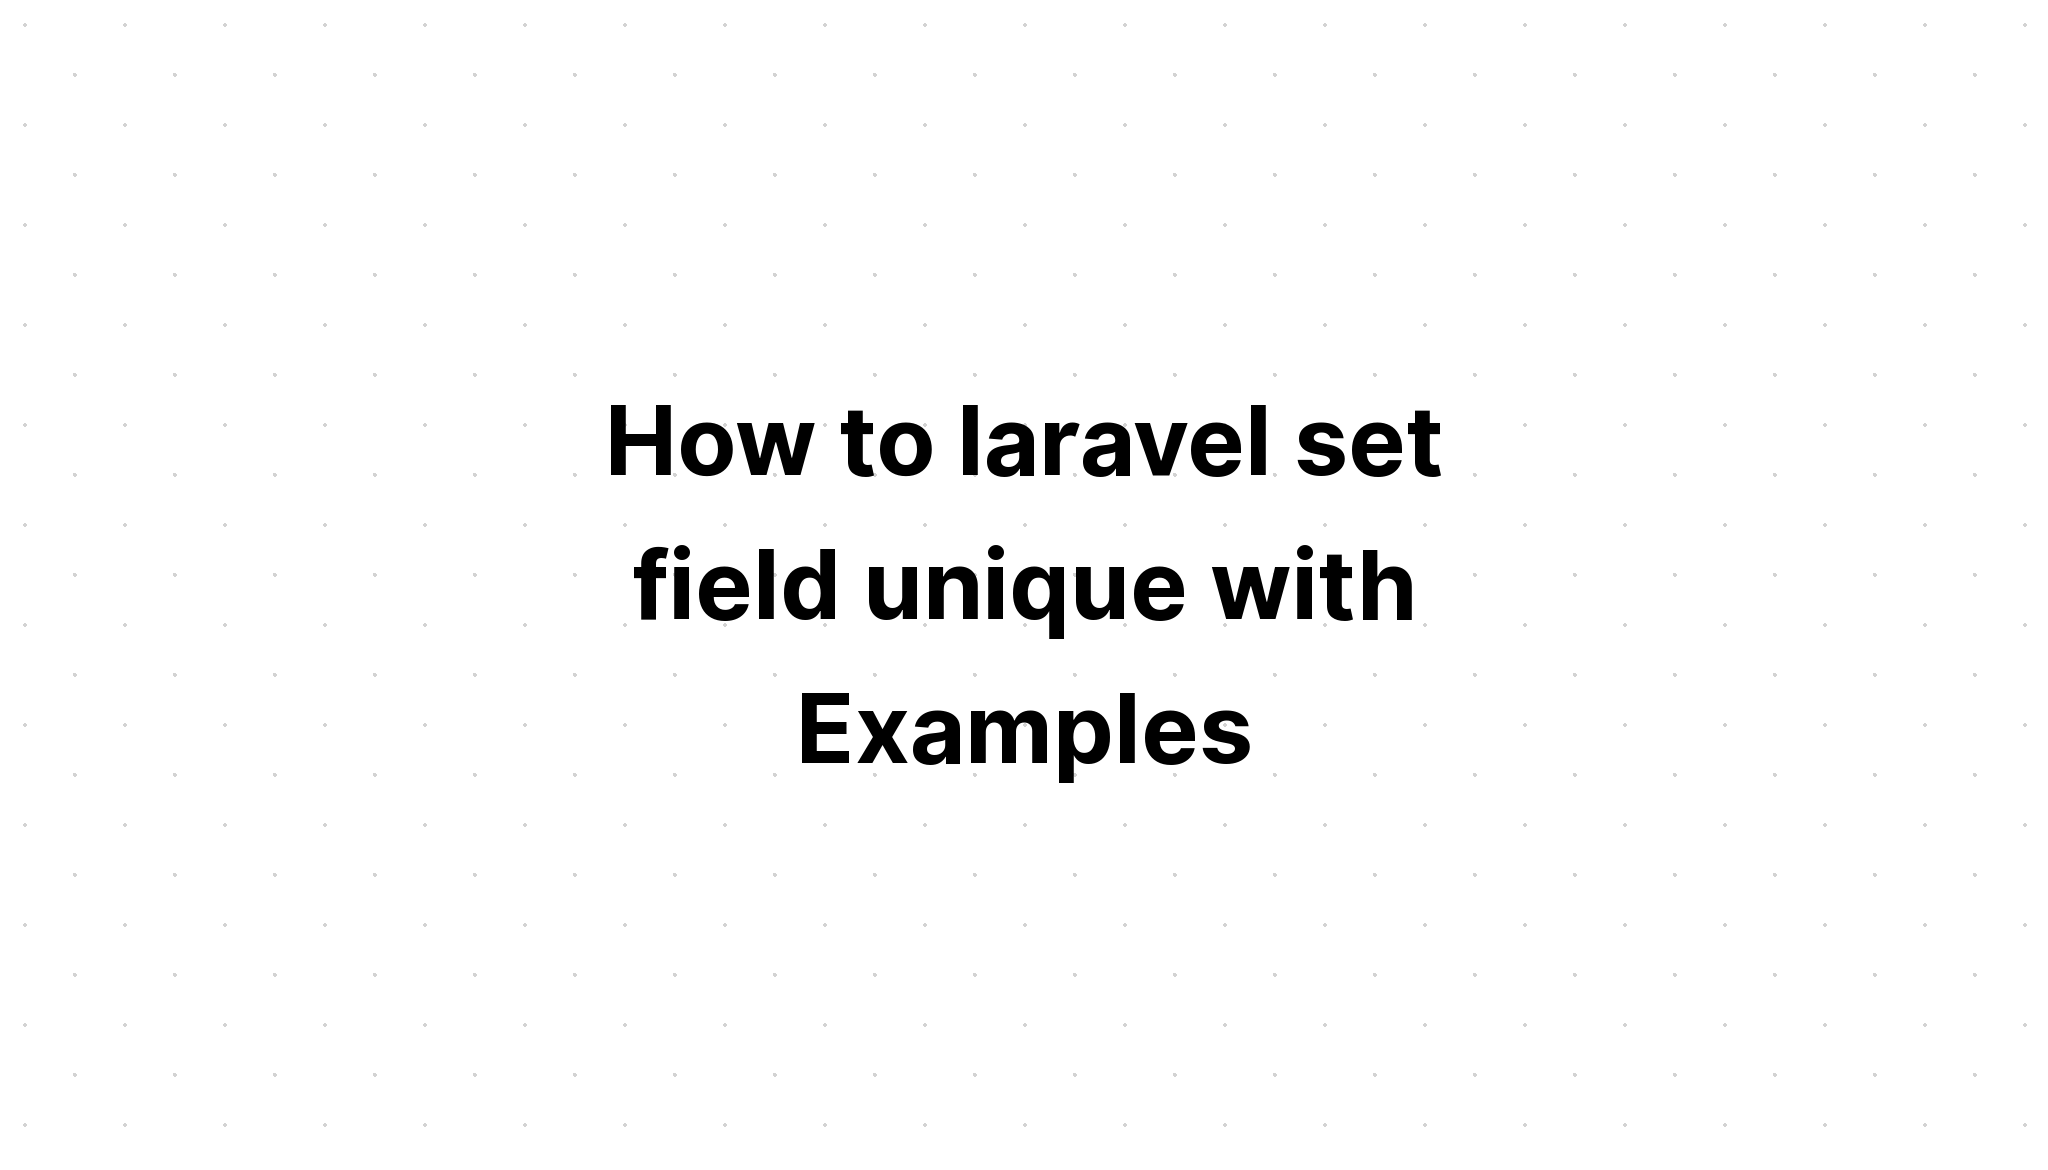 Cara laravel mengatur field unik dengan Contoh